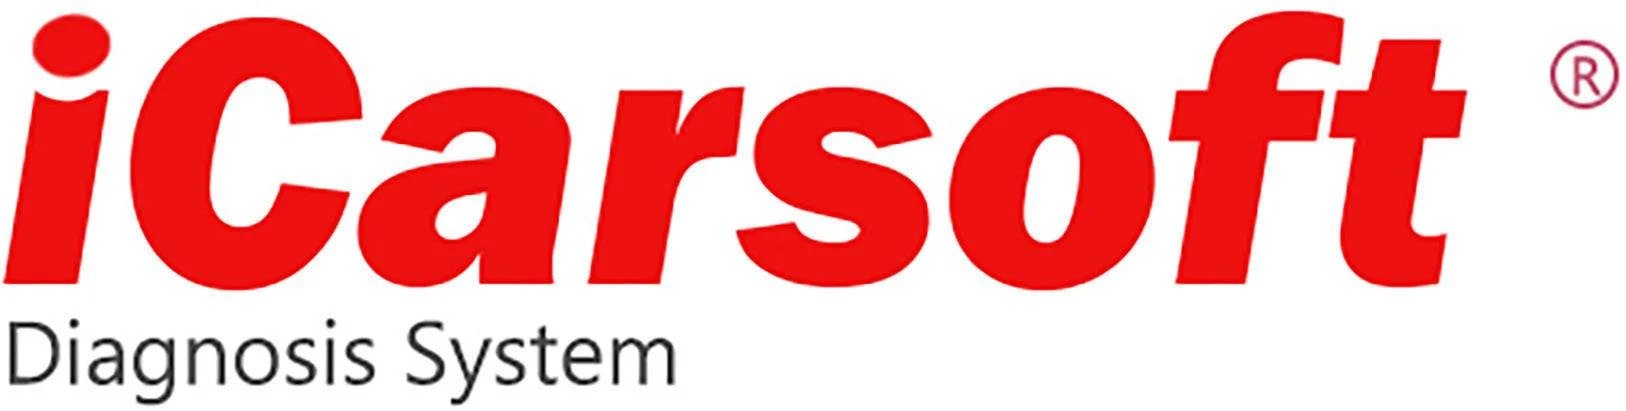 iCarsoft CR Unicorn S (Personbil / lastebil)   - Best  på bildiagnose og diagnoseverktøy i Norge